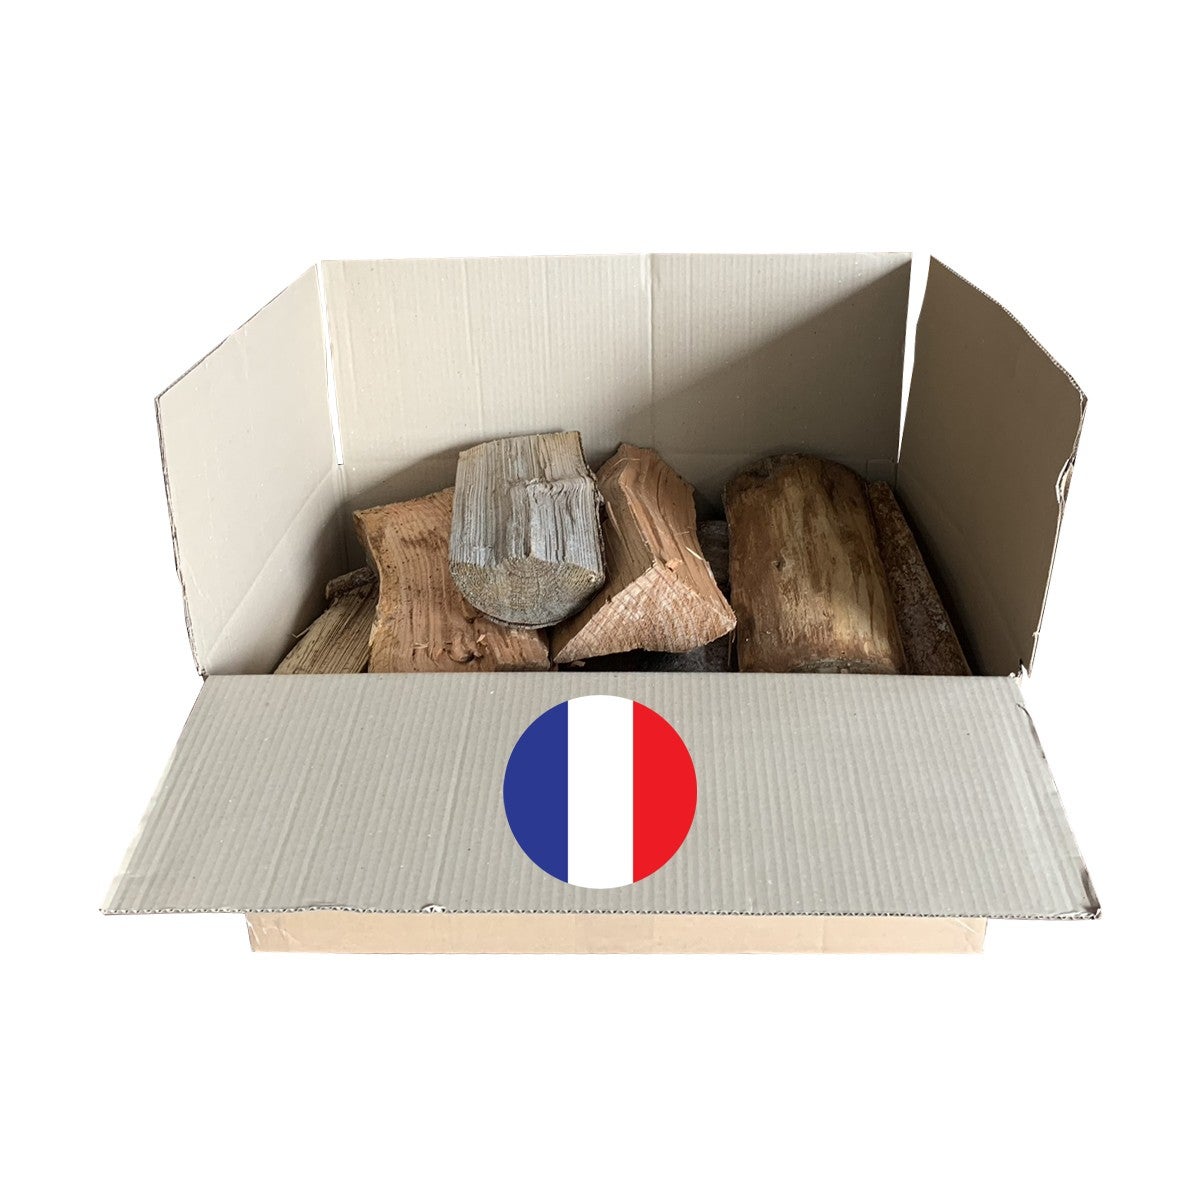 6Kgs de petit bois d'allumage pour cheminée, poêle, Barbecue, brasero et  cuisinière. Petites buchettes de 20cm de chênes / hêtres -  France